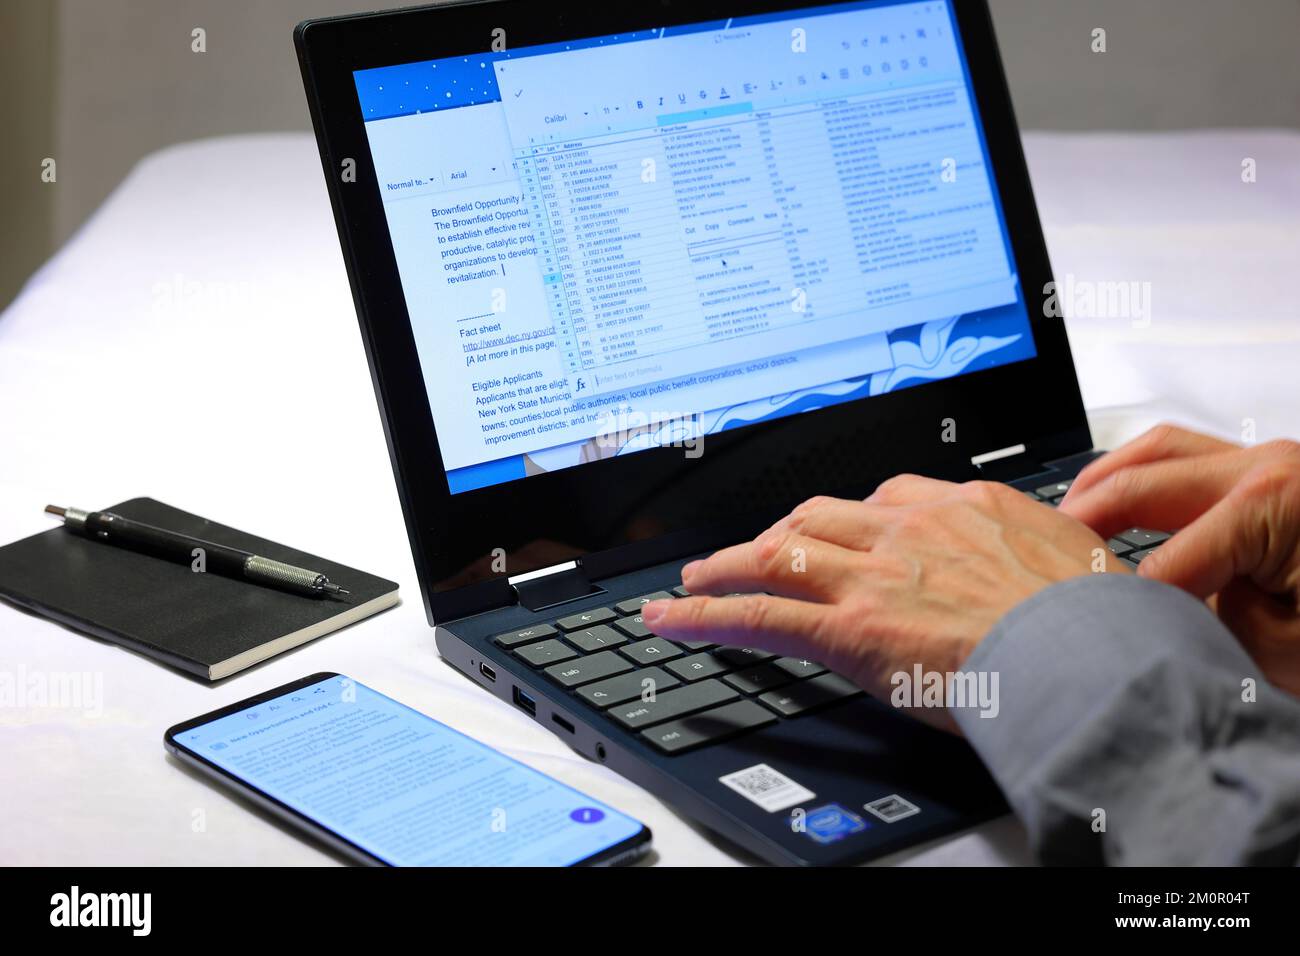 Eine Nahaufnahme der Hände einer Person, die in einen Laptop-Computer tippt, während sich ein Notebook und ein Smartphone in der Nähe befinden. Stockfoto